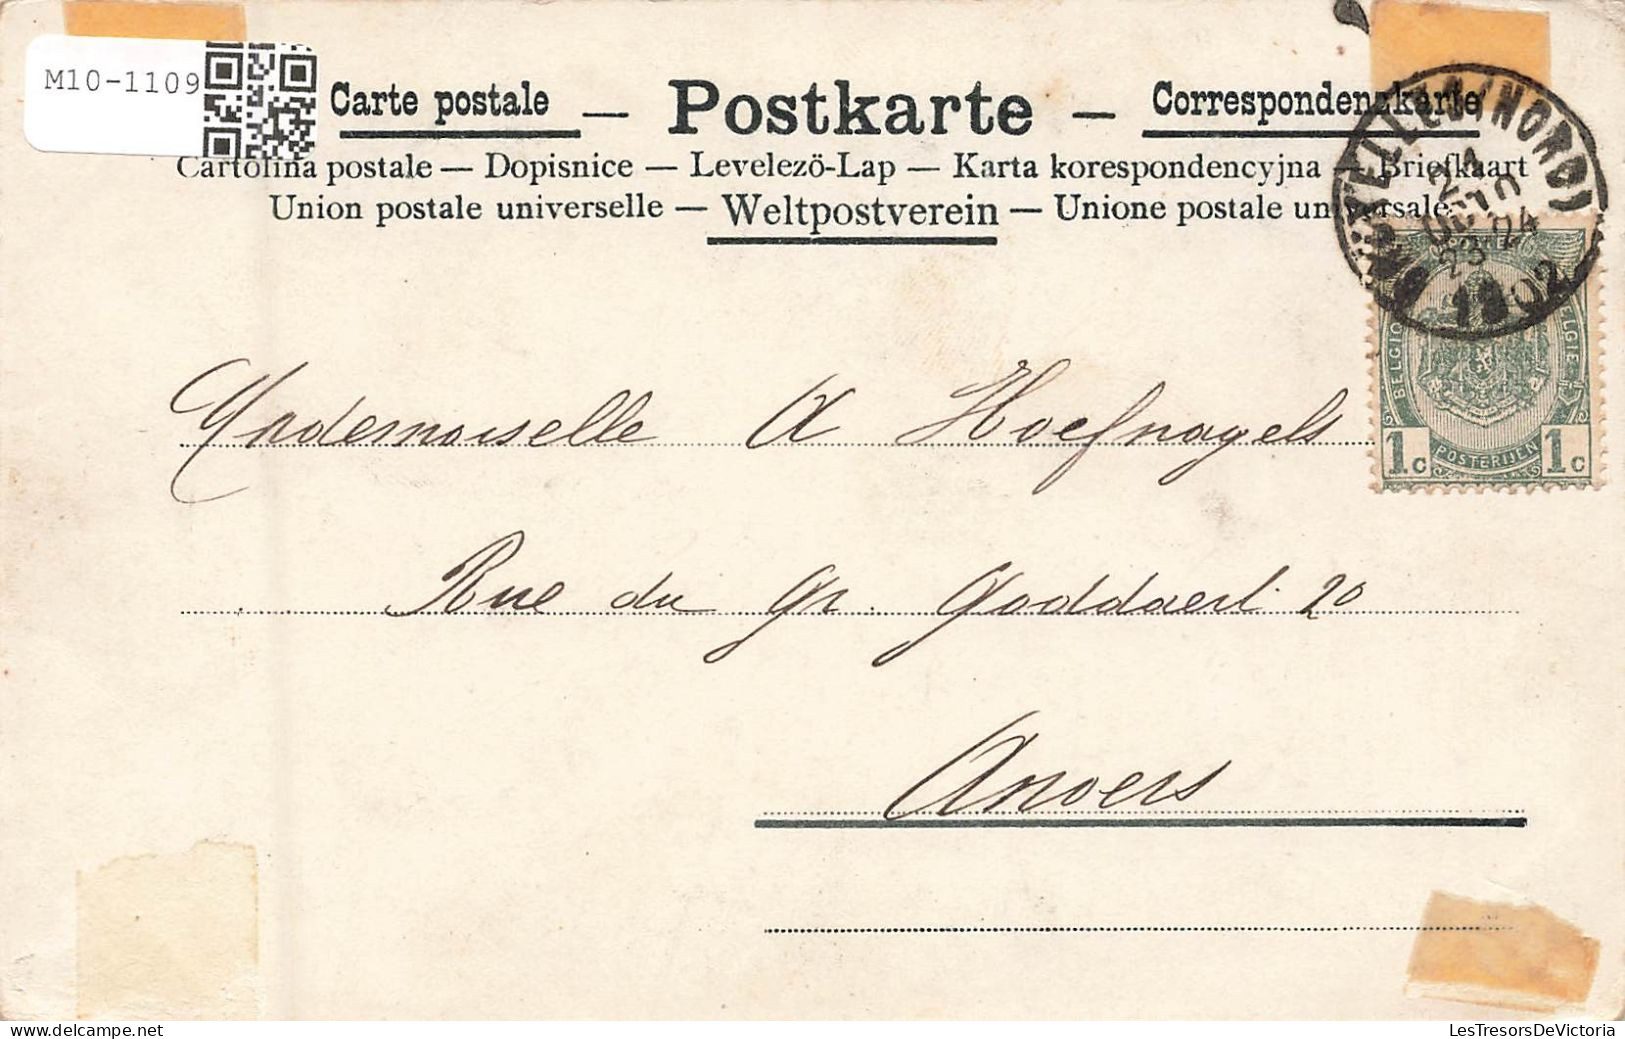 ILLUSTRATEURS - Non Signés - Colorisé - Animé - Carte Postale Ancienne - Voor 1900